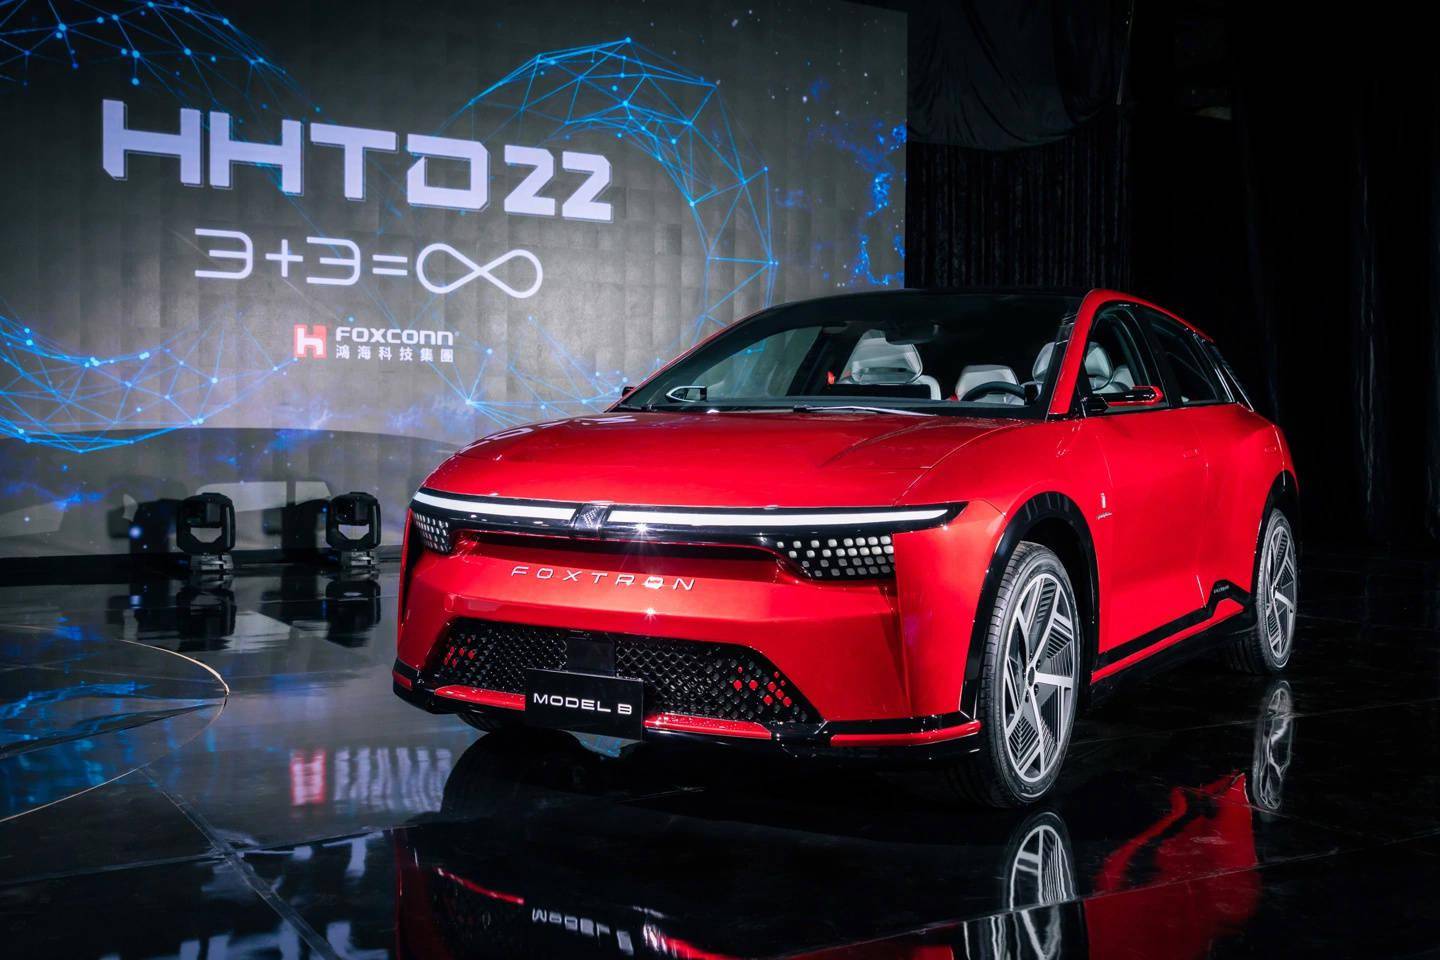 消息称富士康于郑州设立新事业集团 瞄准电动汽车业务及AI 软件研发等